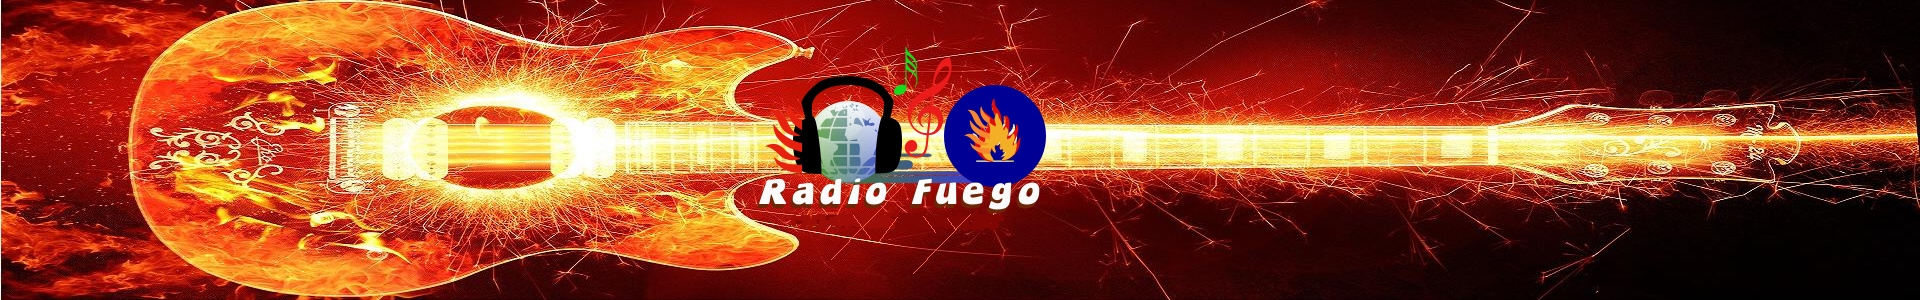 Radio Fuego Series